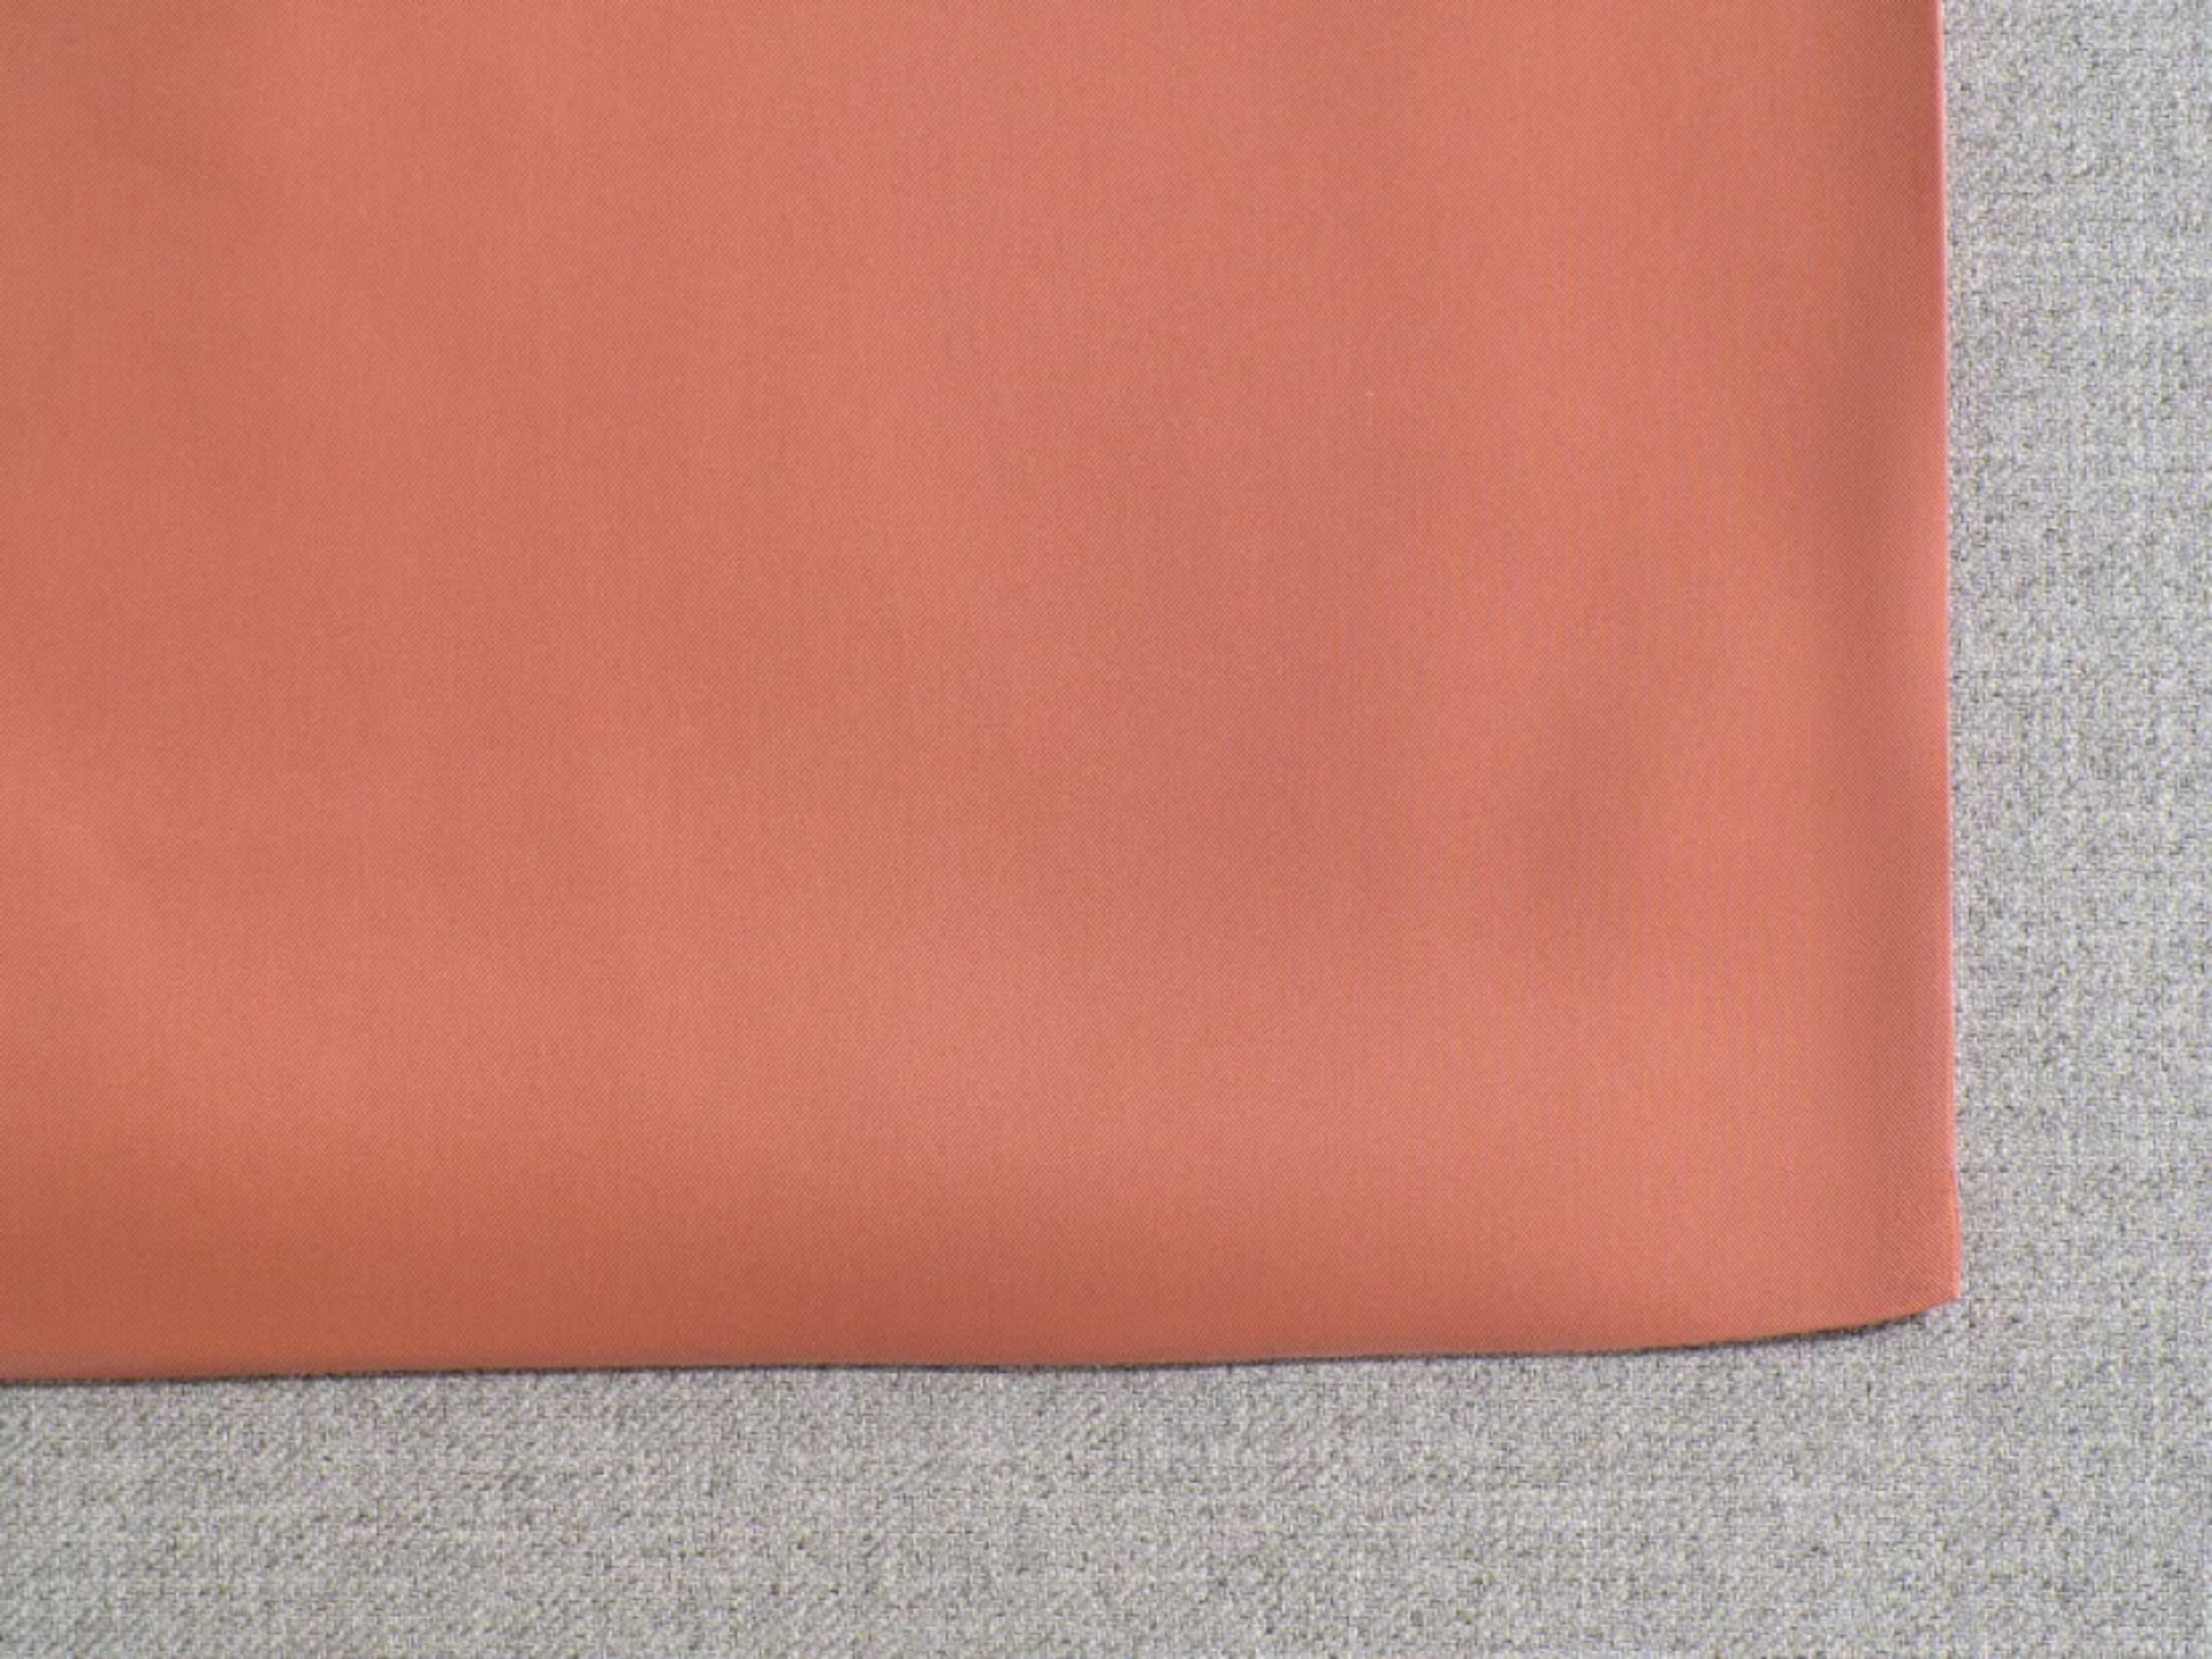 Duvet Cover Set Fabric Swatch Nullarbor